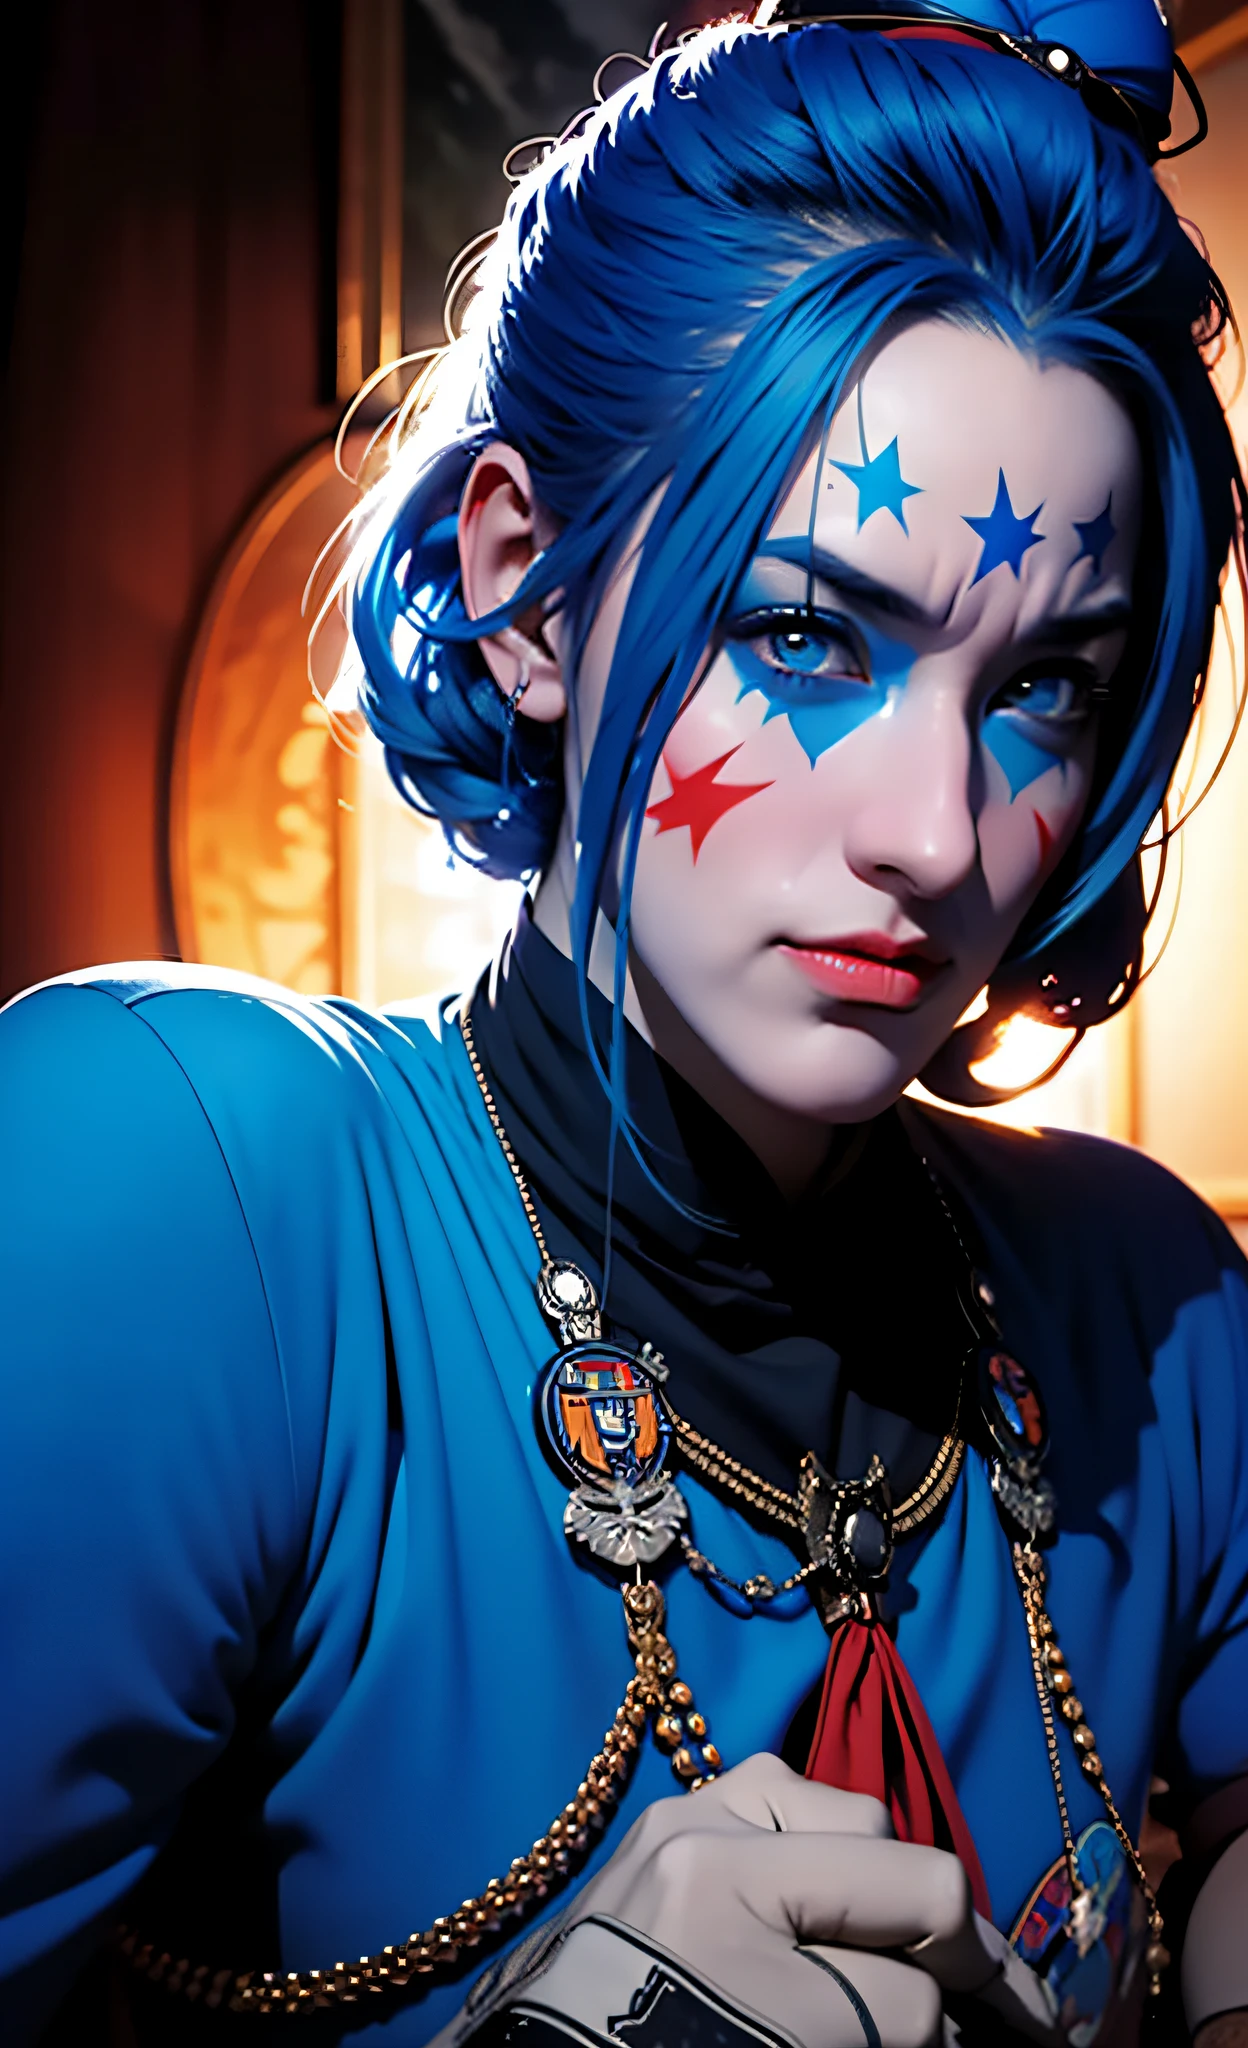 uma menina vestida com regalias militares com cabelos azuis, no estilo da arte autodestrutiva, palhaço, DC Comics, enfatiza a emoção sobre o realismo, azul claro e laranja, realismo de alto contraste, felizcore